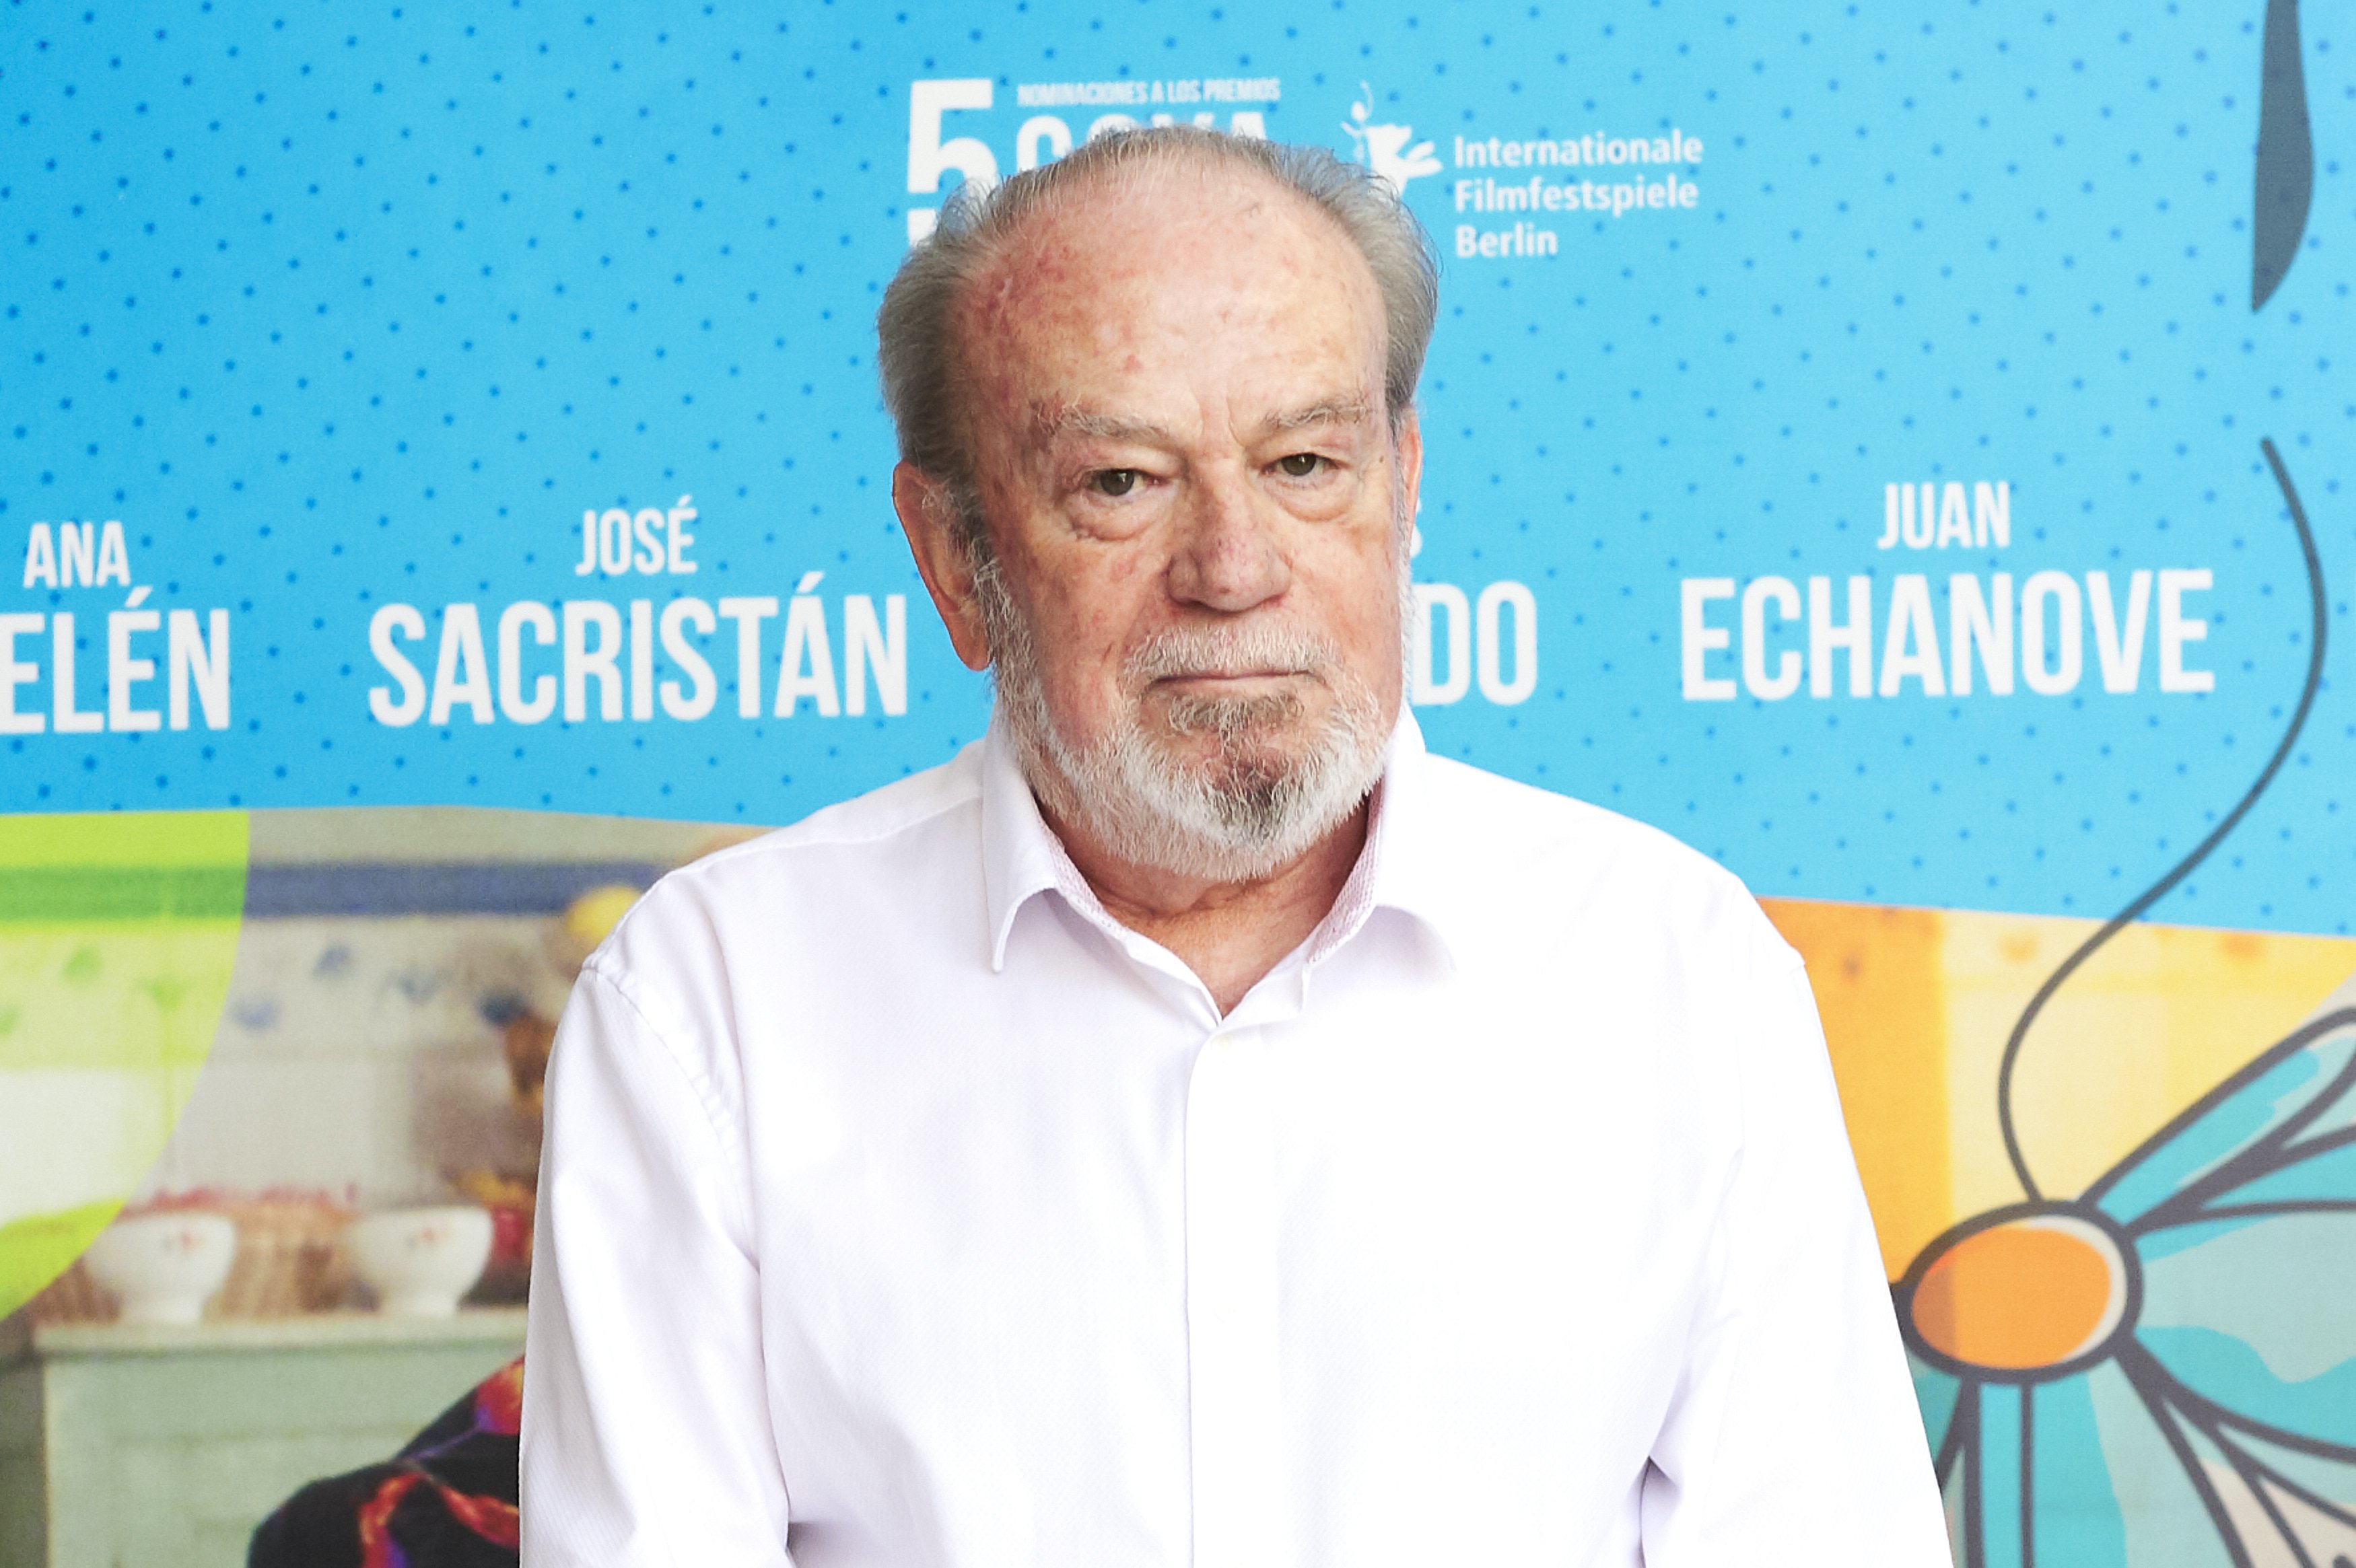 Fernando Arribas en el 30 aniversario de ‘El Vuelo de La Paloma’ en la Academia de Cine, el 17 de julio de 2018 en Madrid, España. | Foto: Getty Images